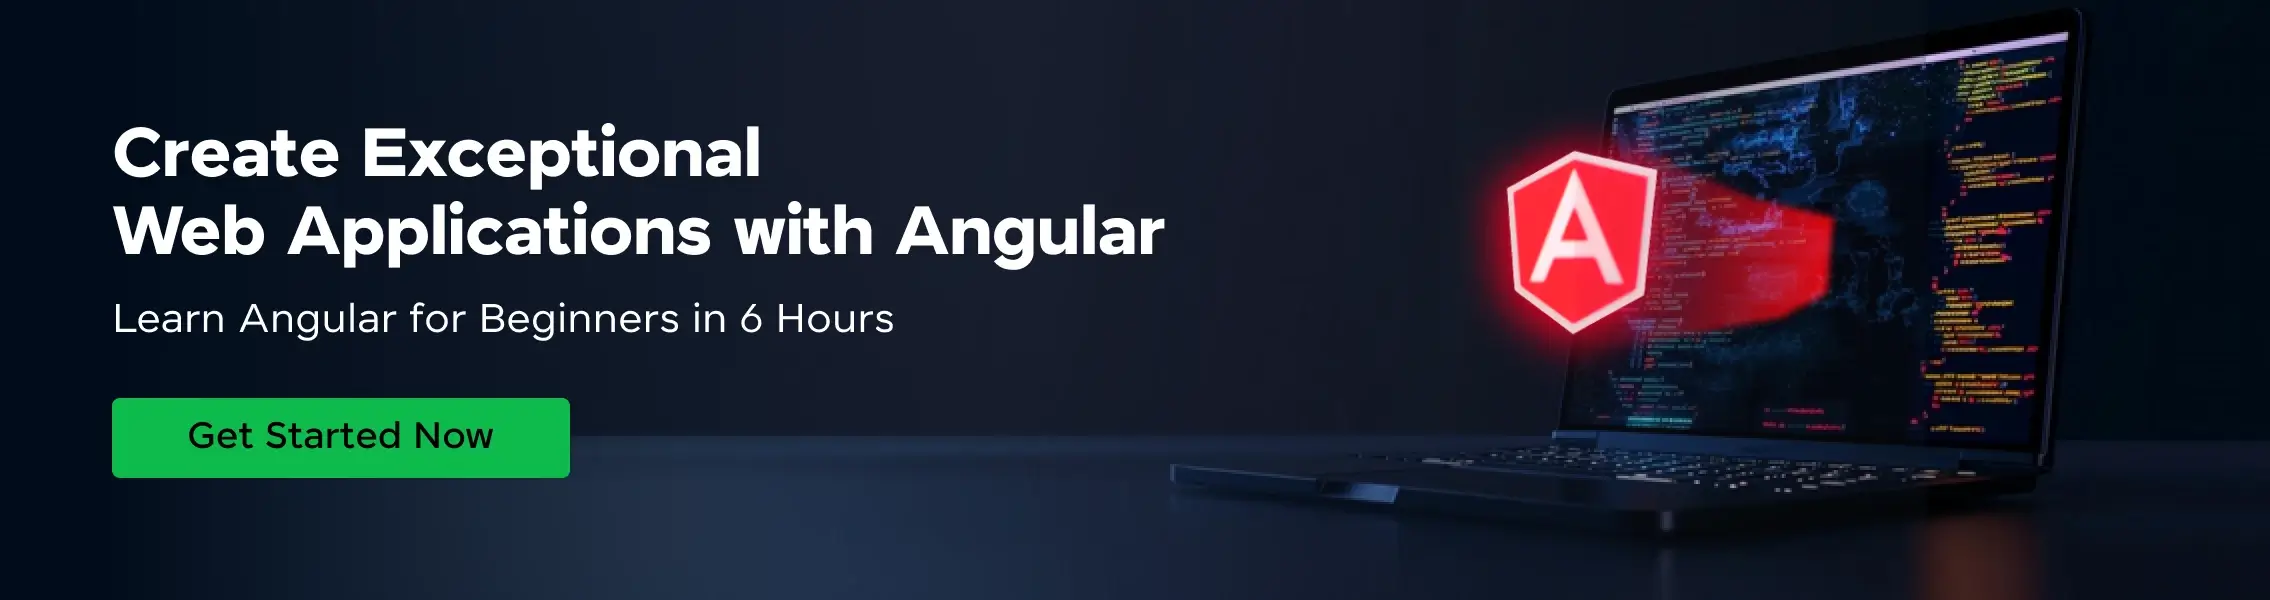 angular beginners course desktop banner horizontal